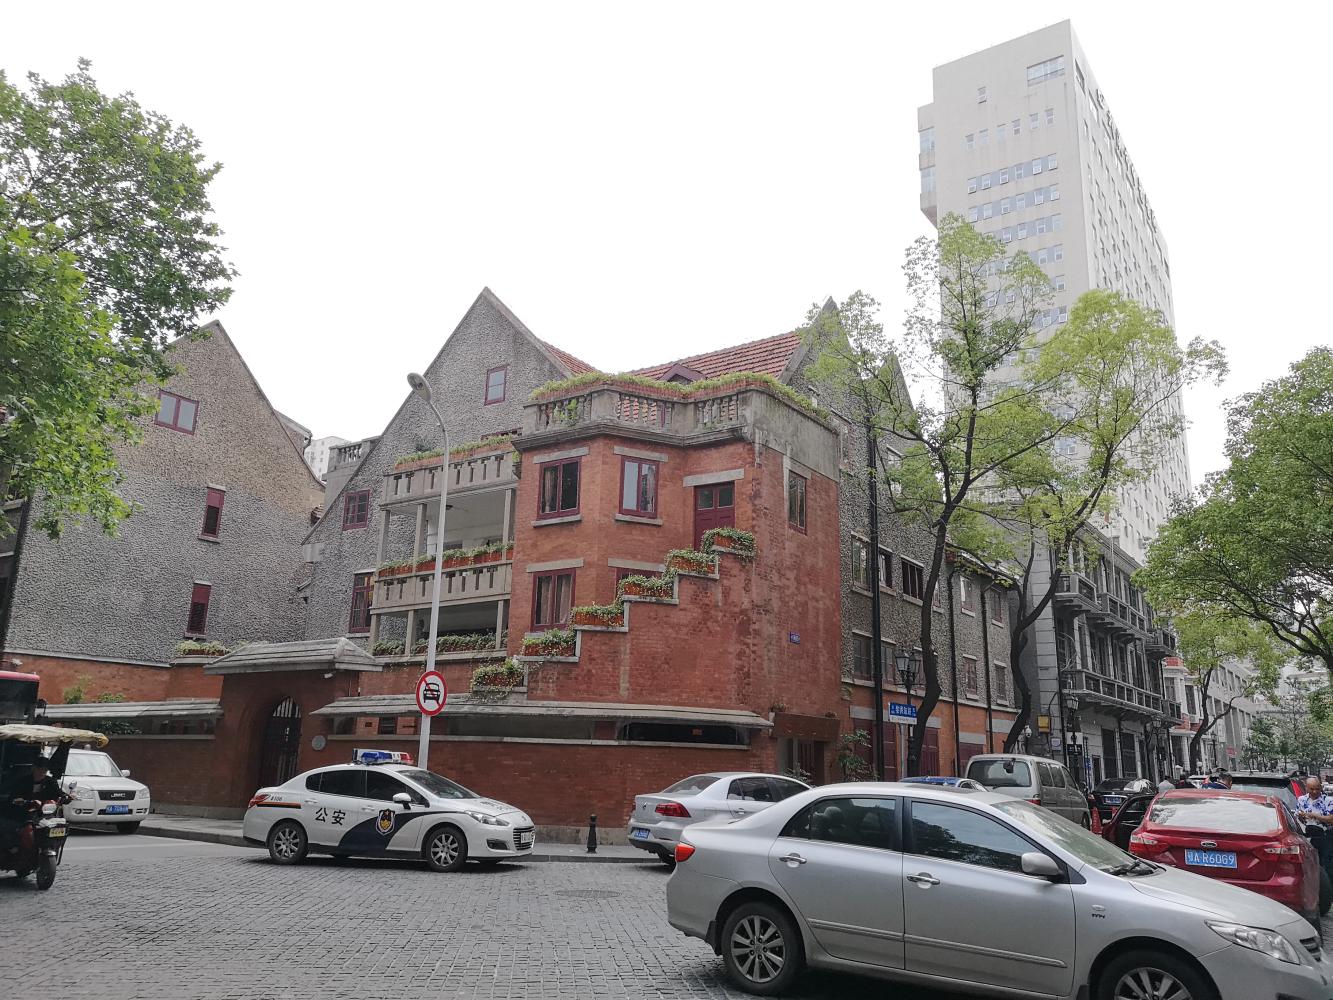 黎黄陂路,武汉一条欧式建筑连片的步行街